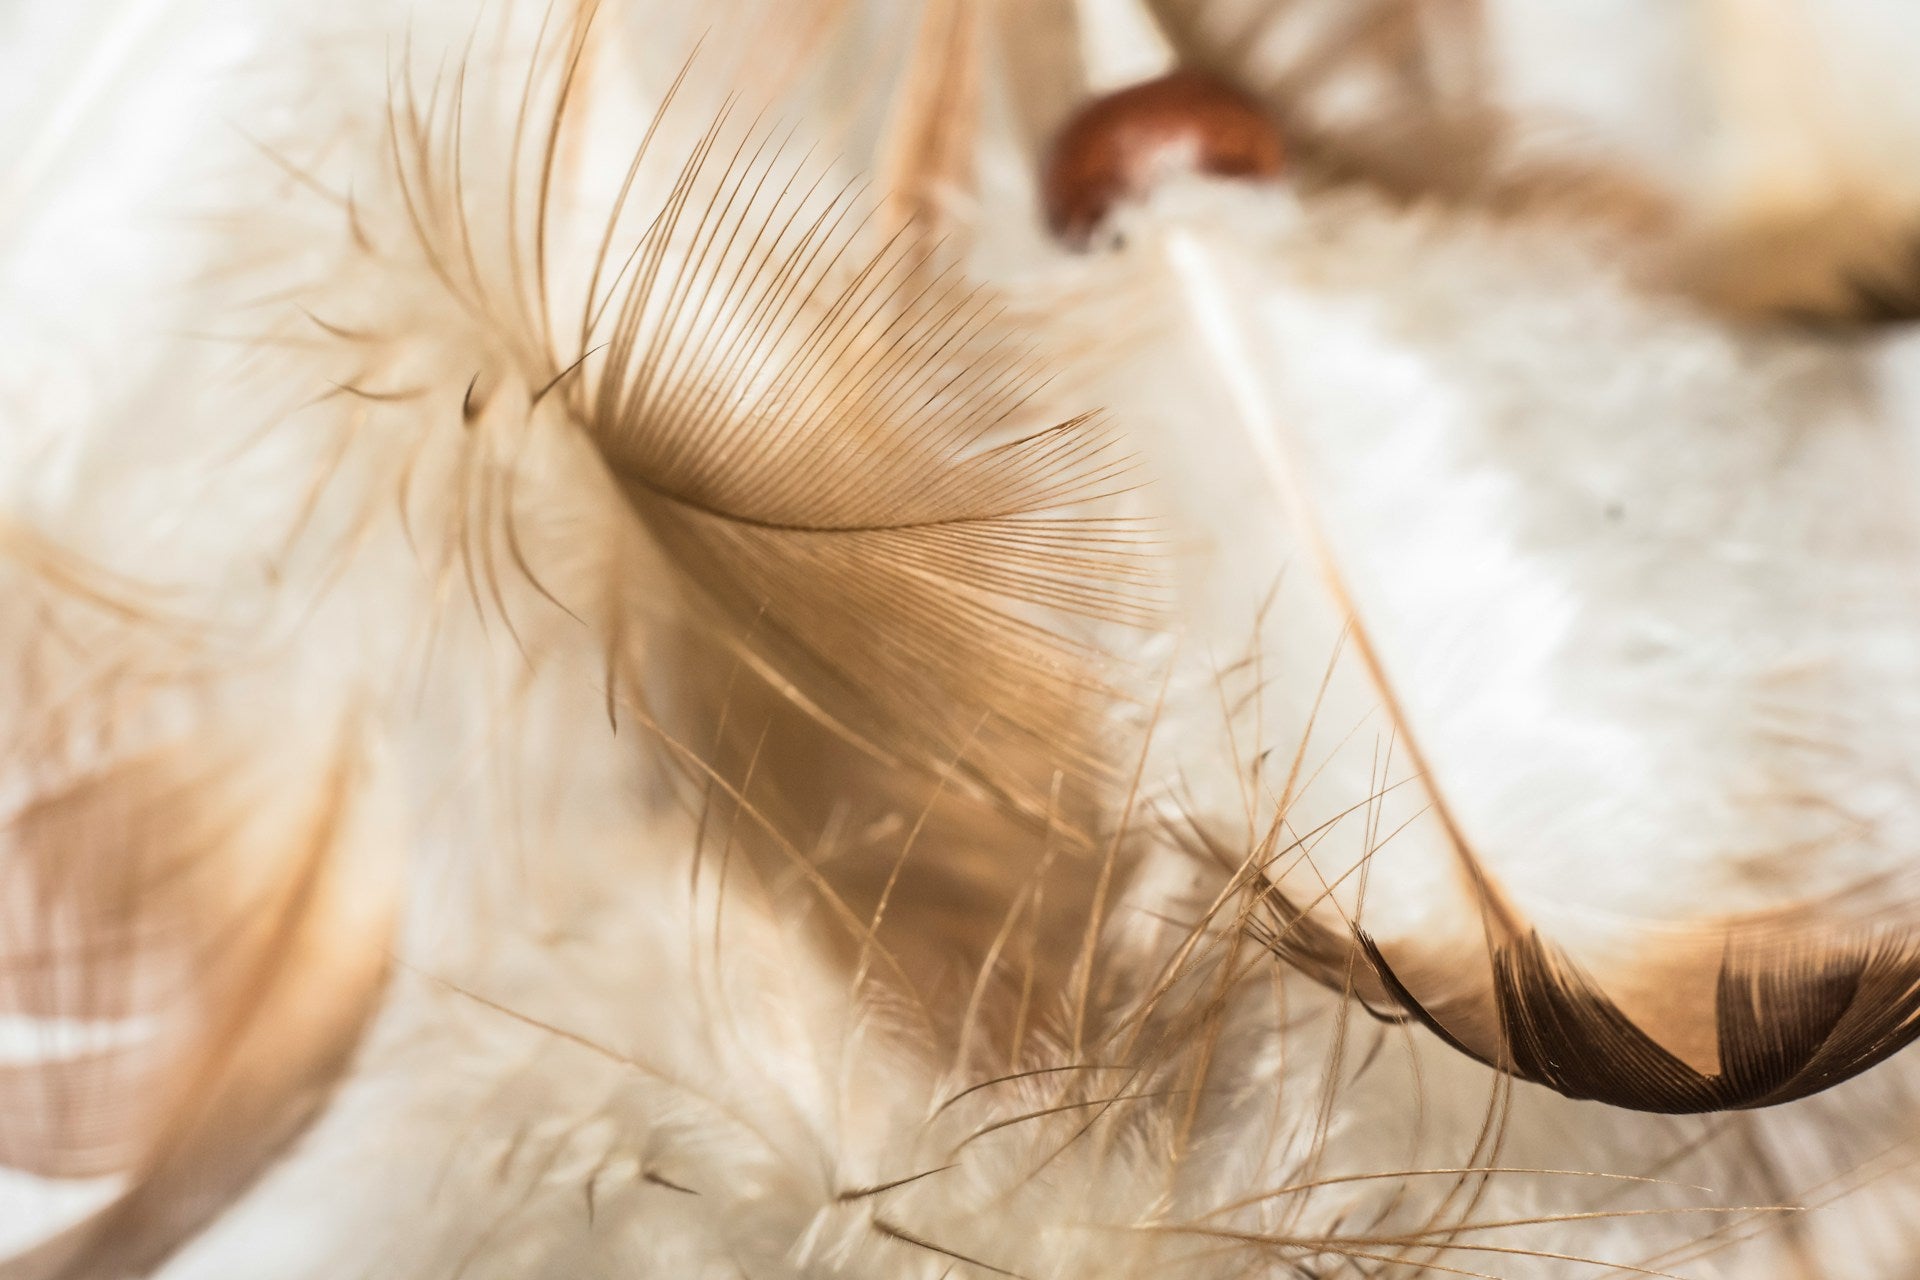 茶色と白のグラデーションになった鳥の羽根が何枚か、アップでうつされています。羽根の柔らかな質感がわかる写真です。